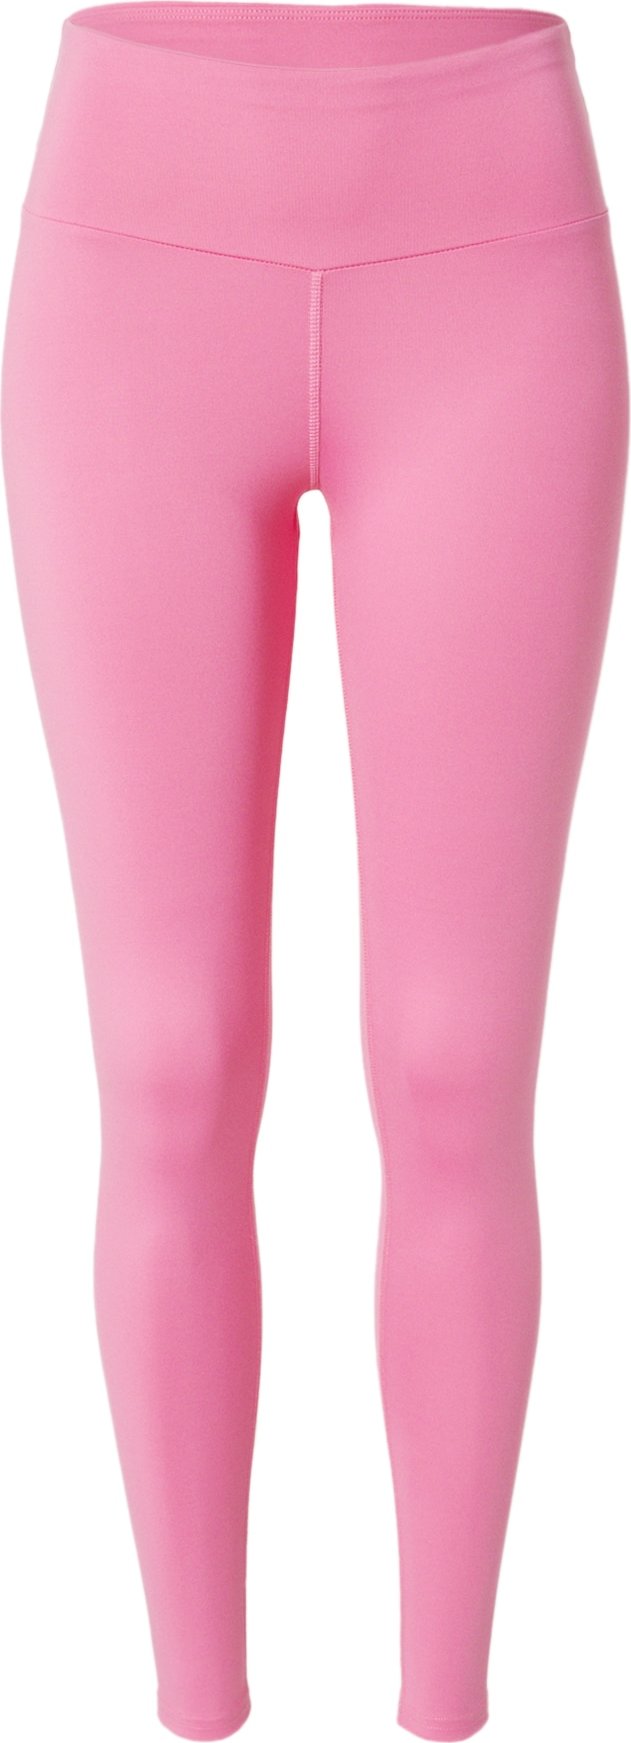 Hey Honey Sportovní kalhoty 'Carnation' pink